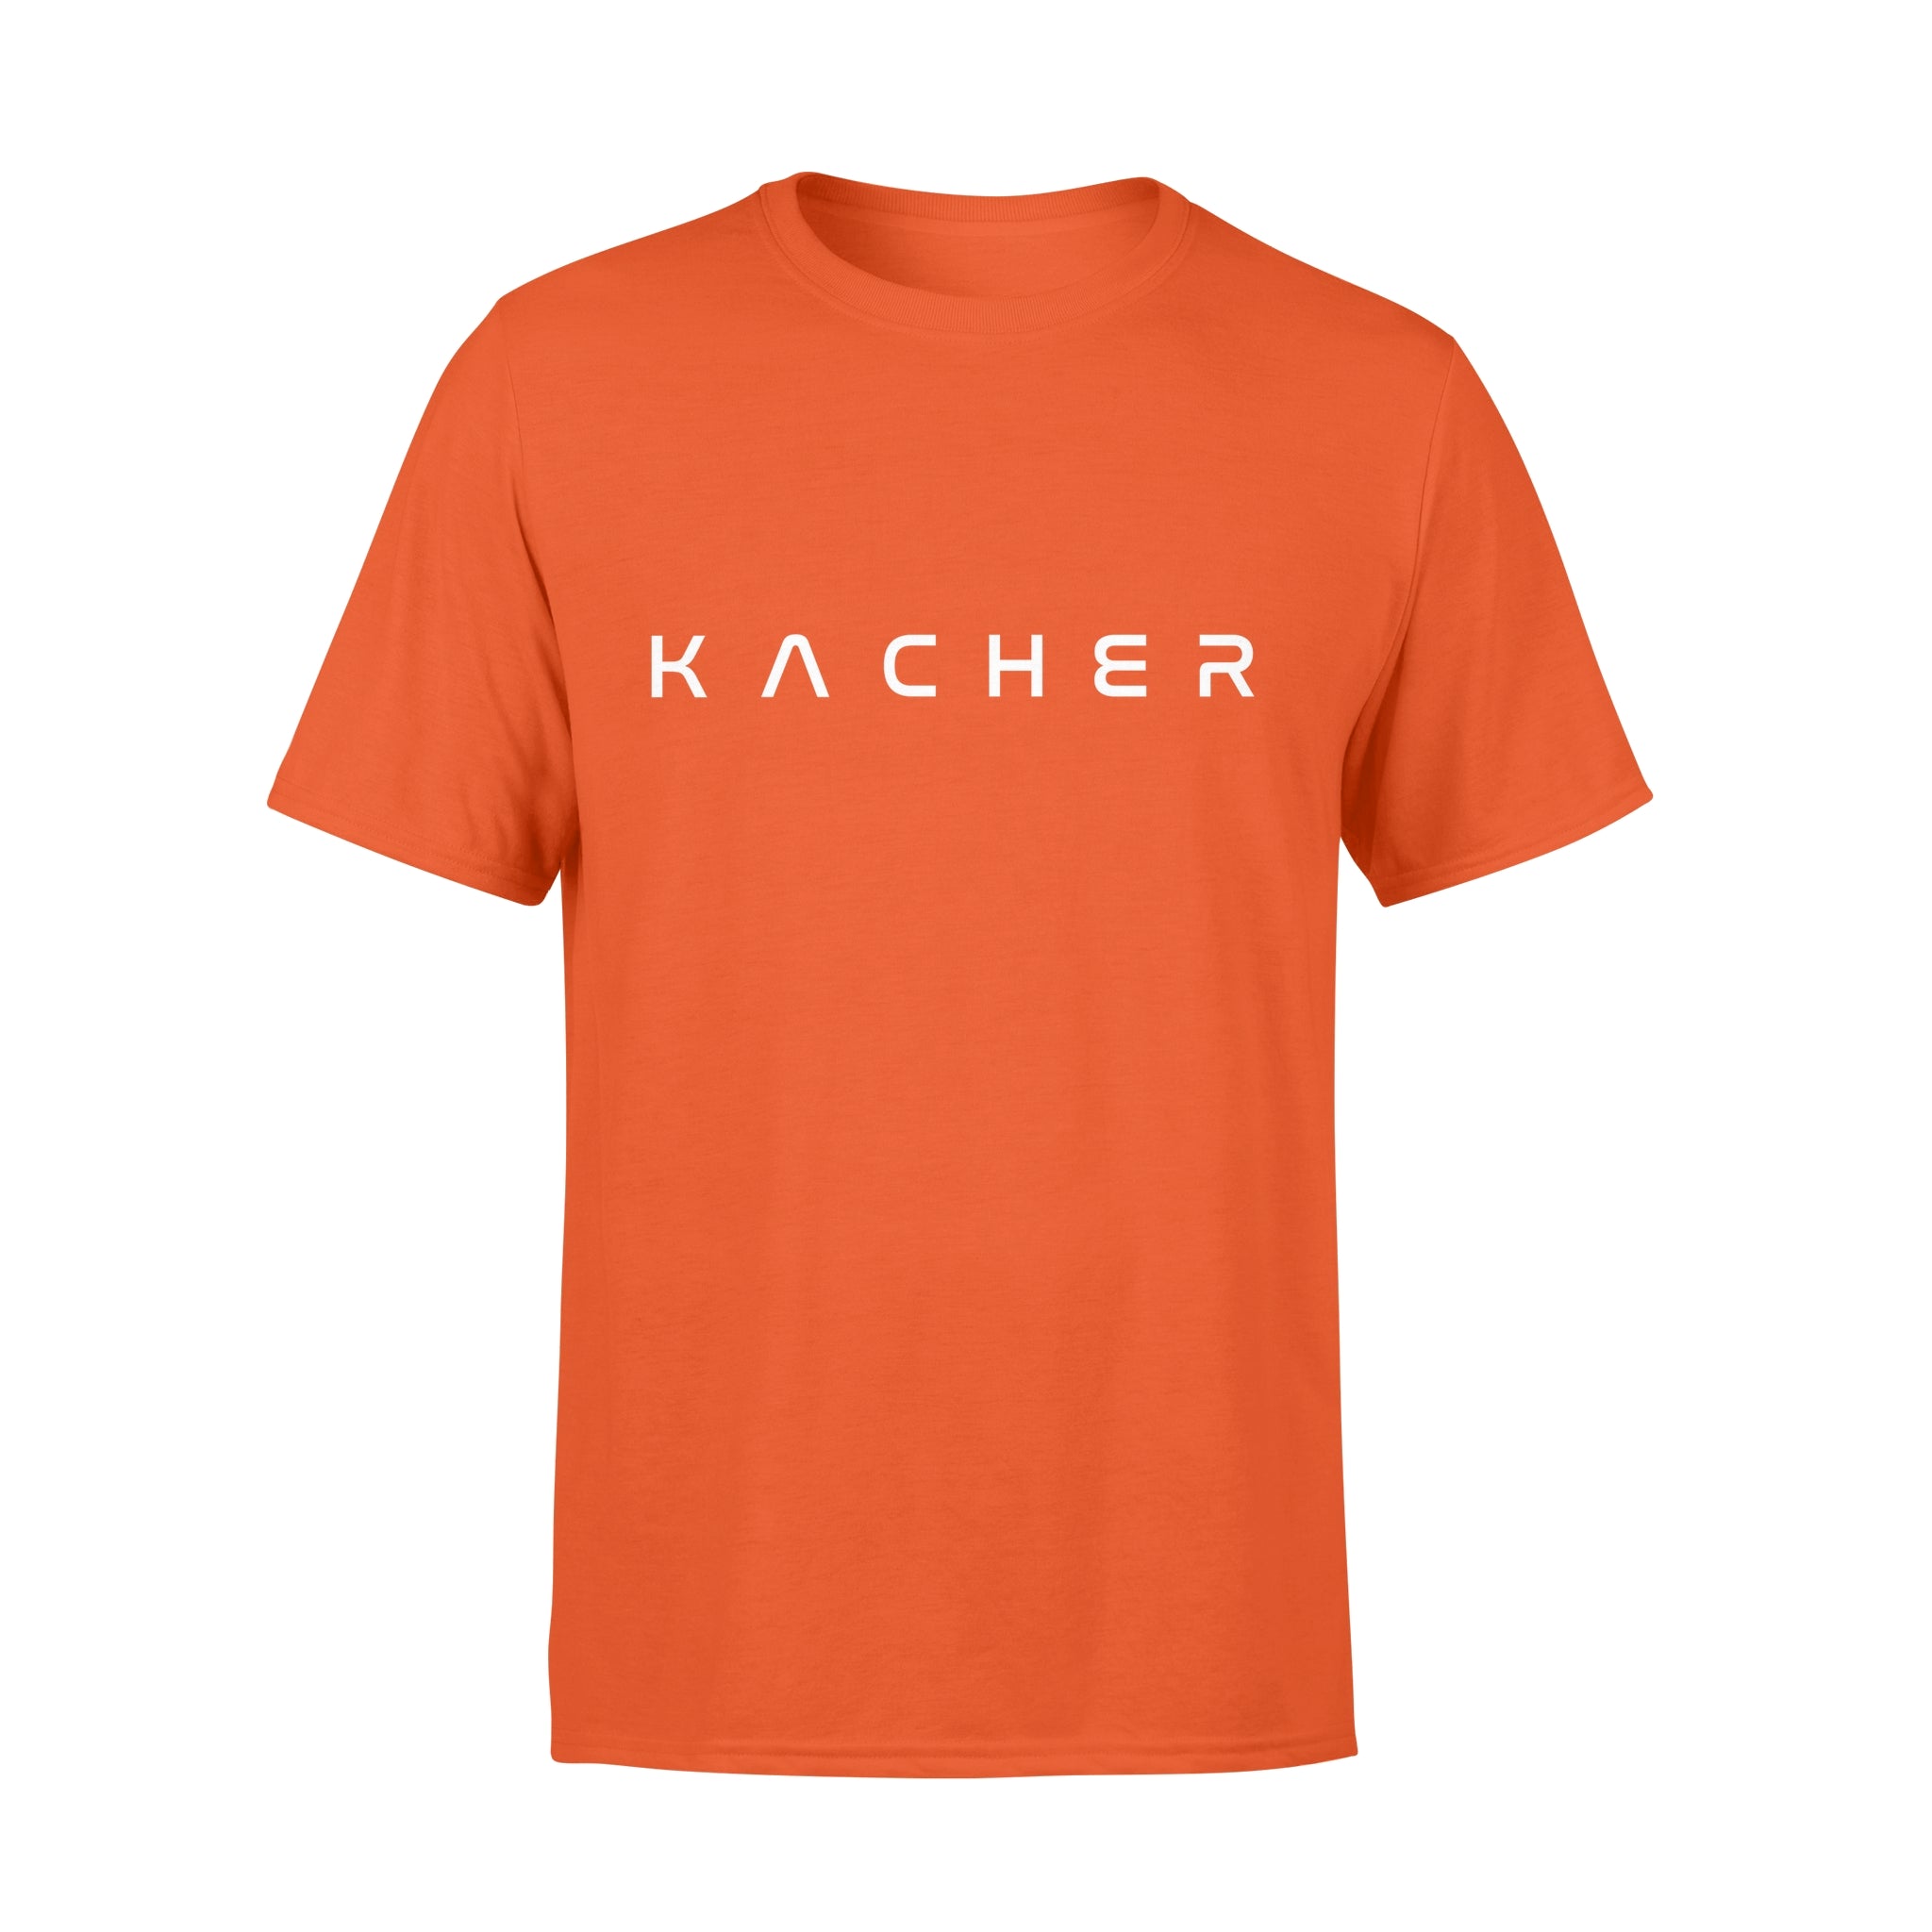 KACHER - T-shirt